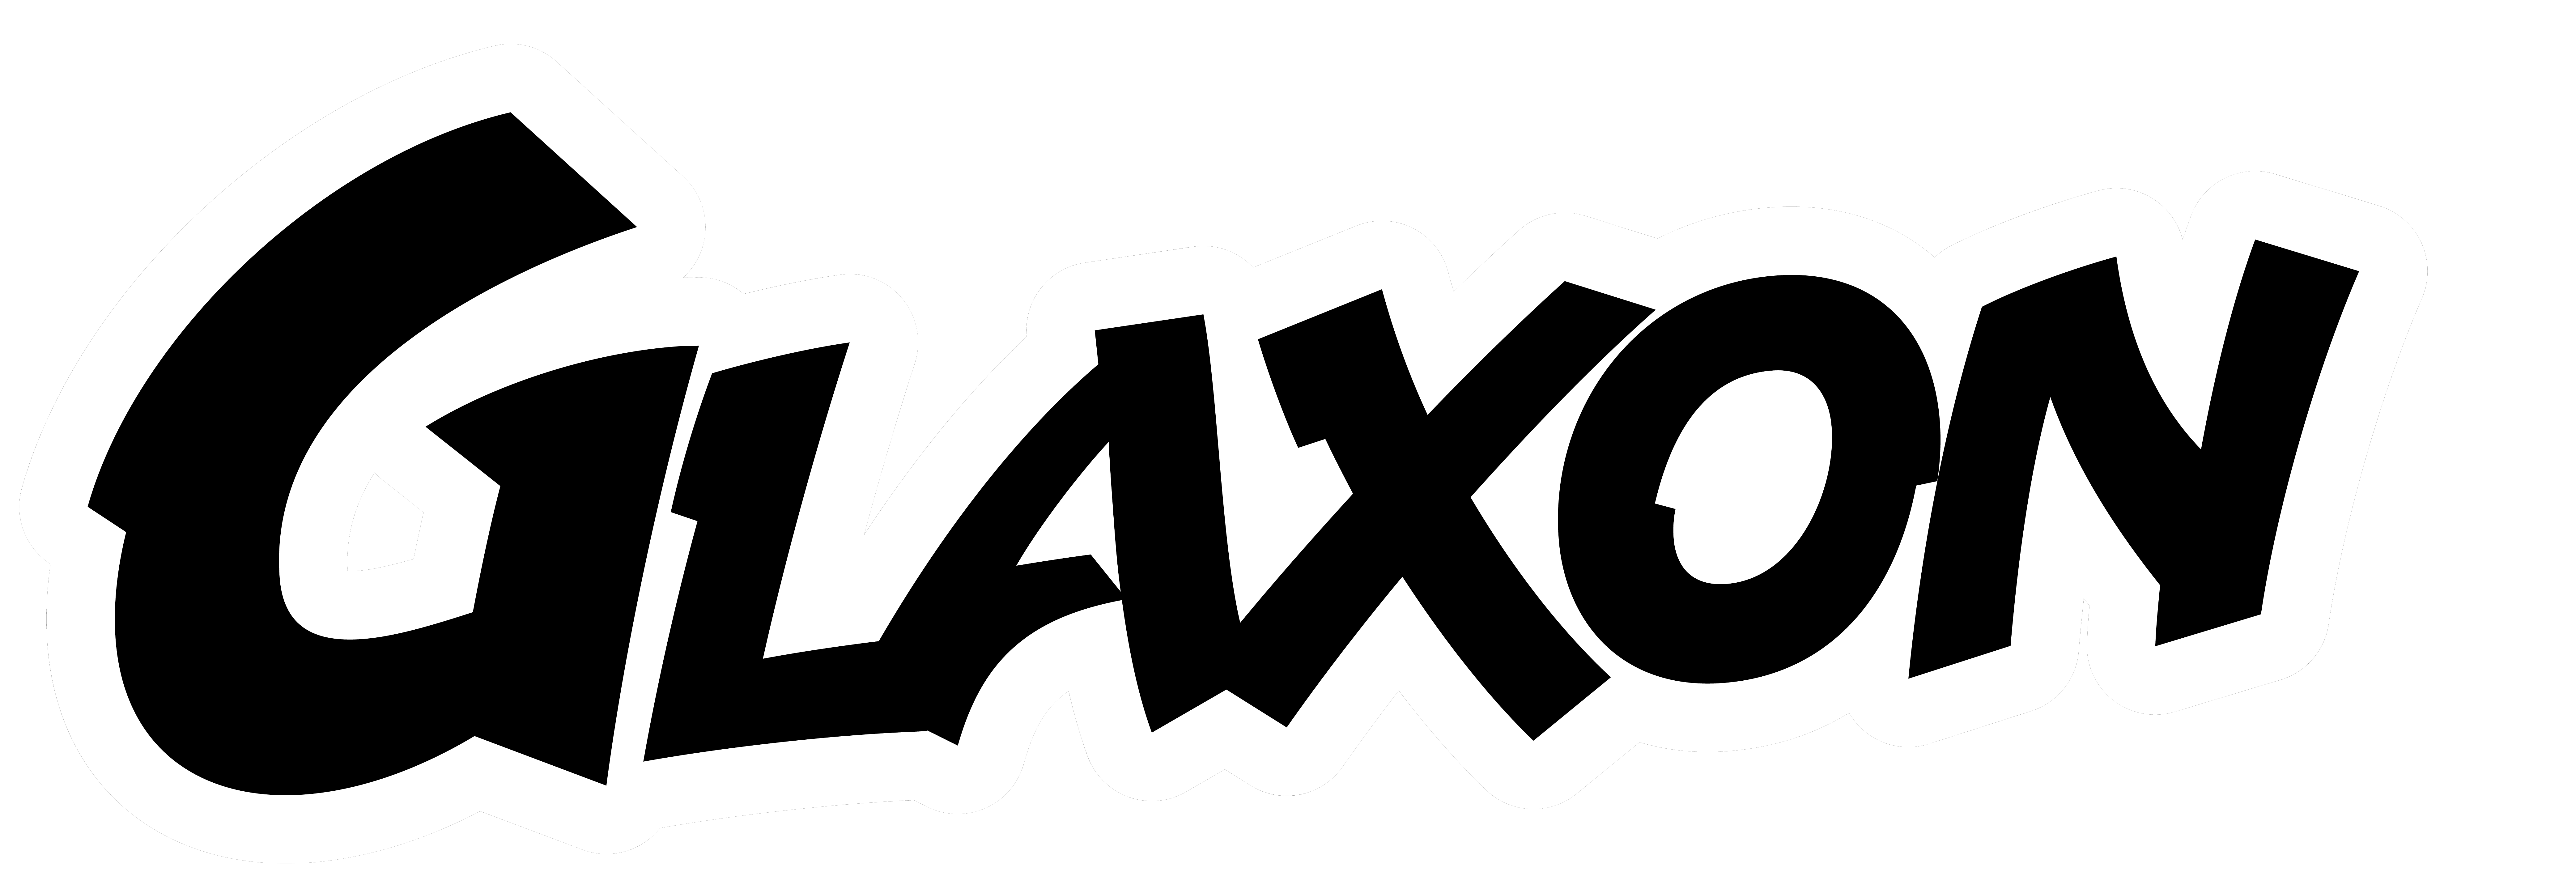 Glaxon Logo 2021 All Black